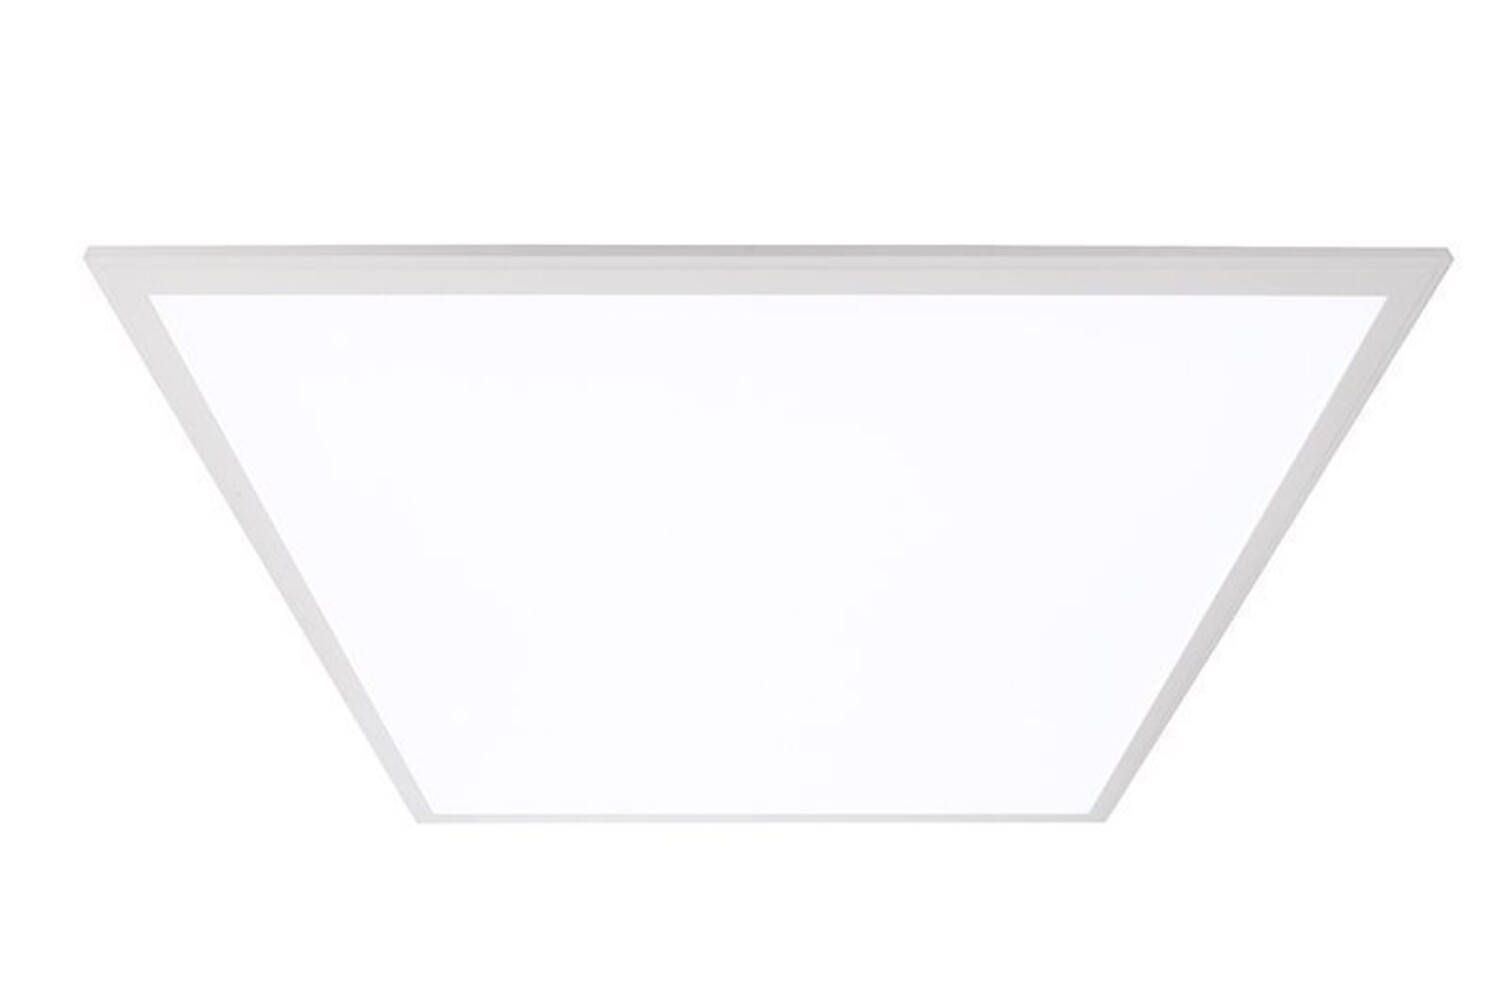 Hochwertiges, energieeffizientes LED Panel der Marke Deko-Light